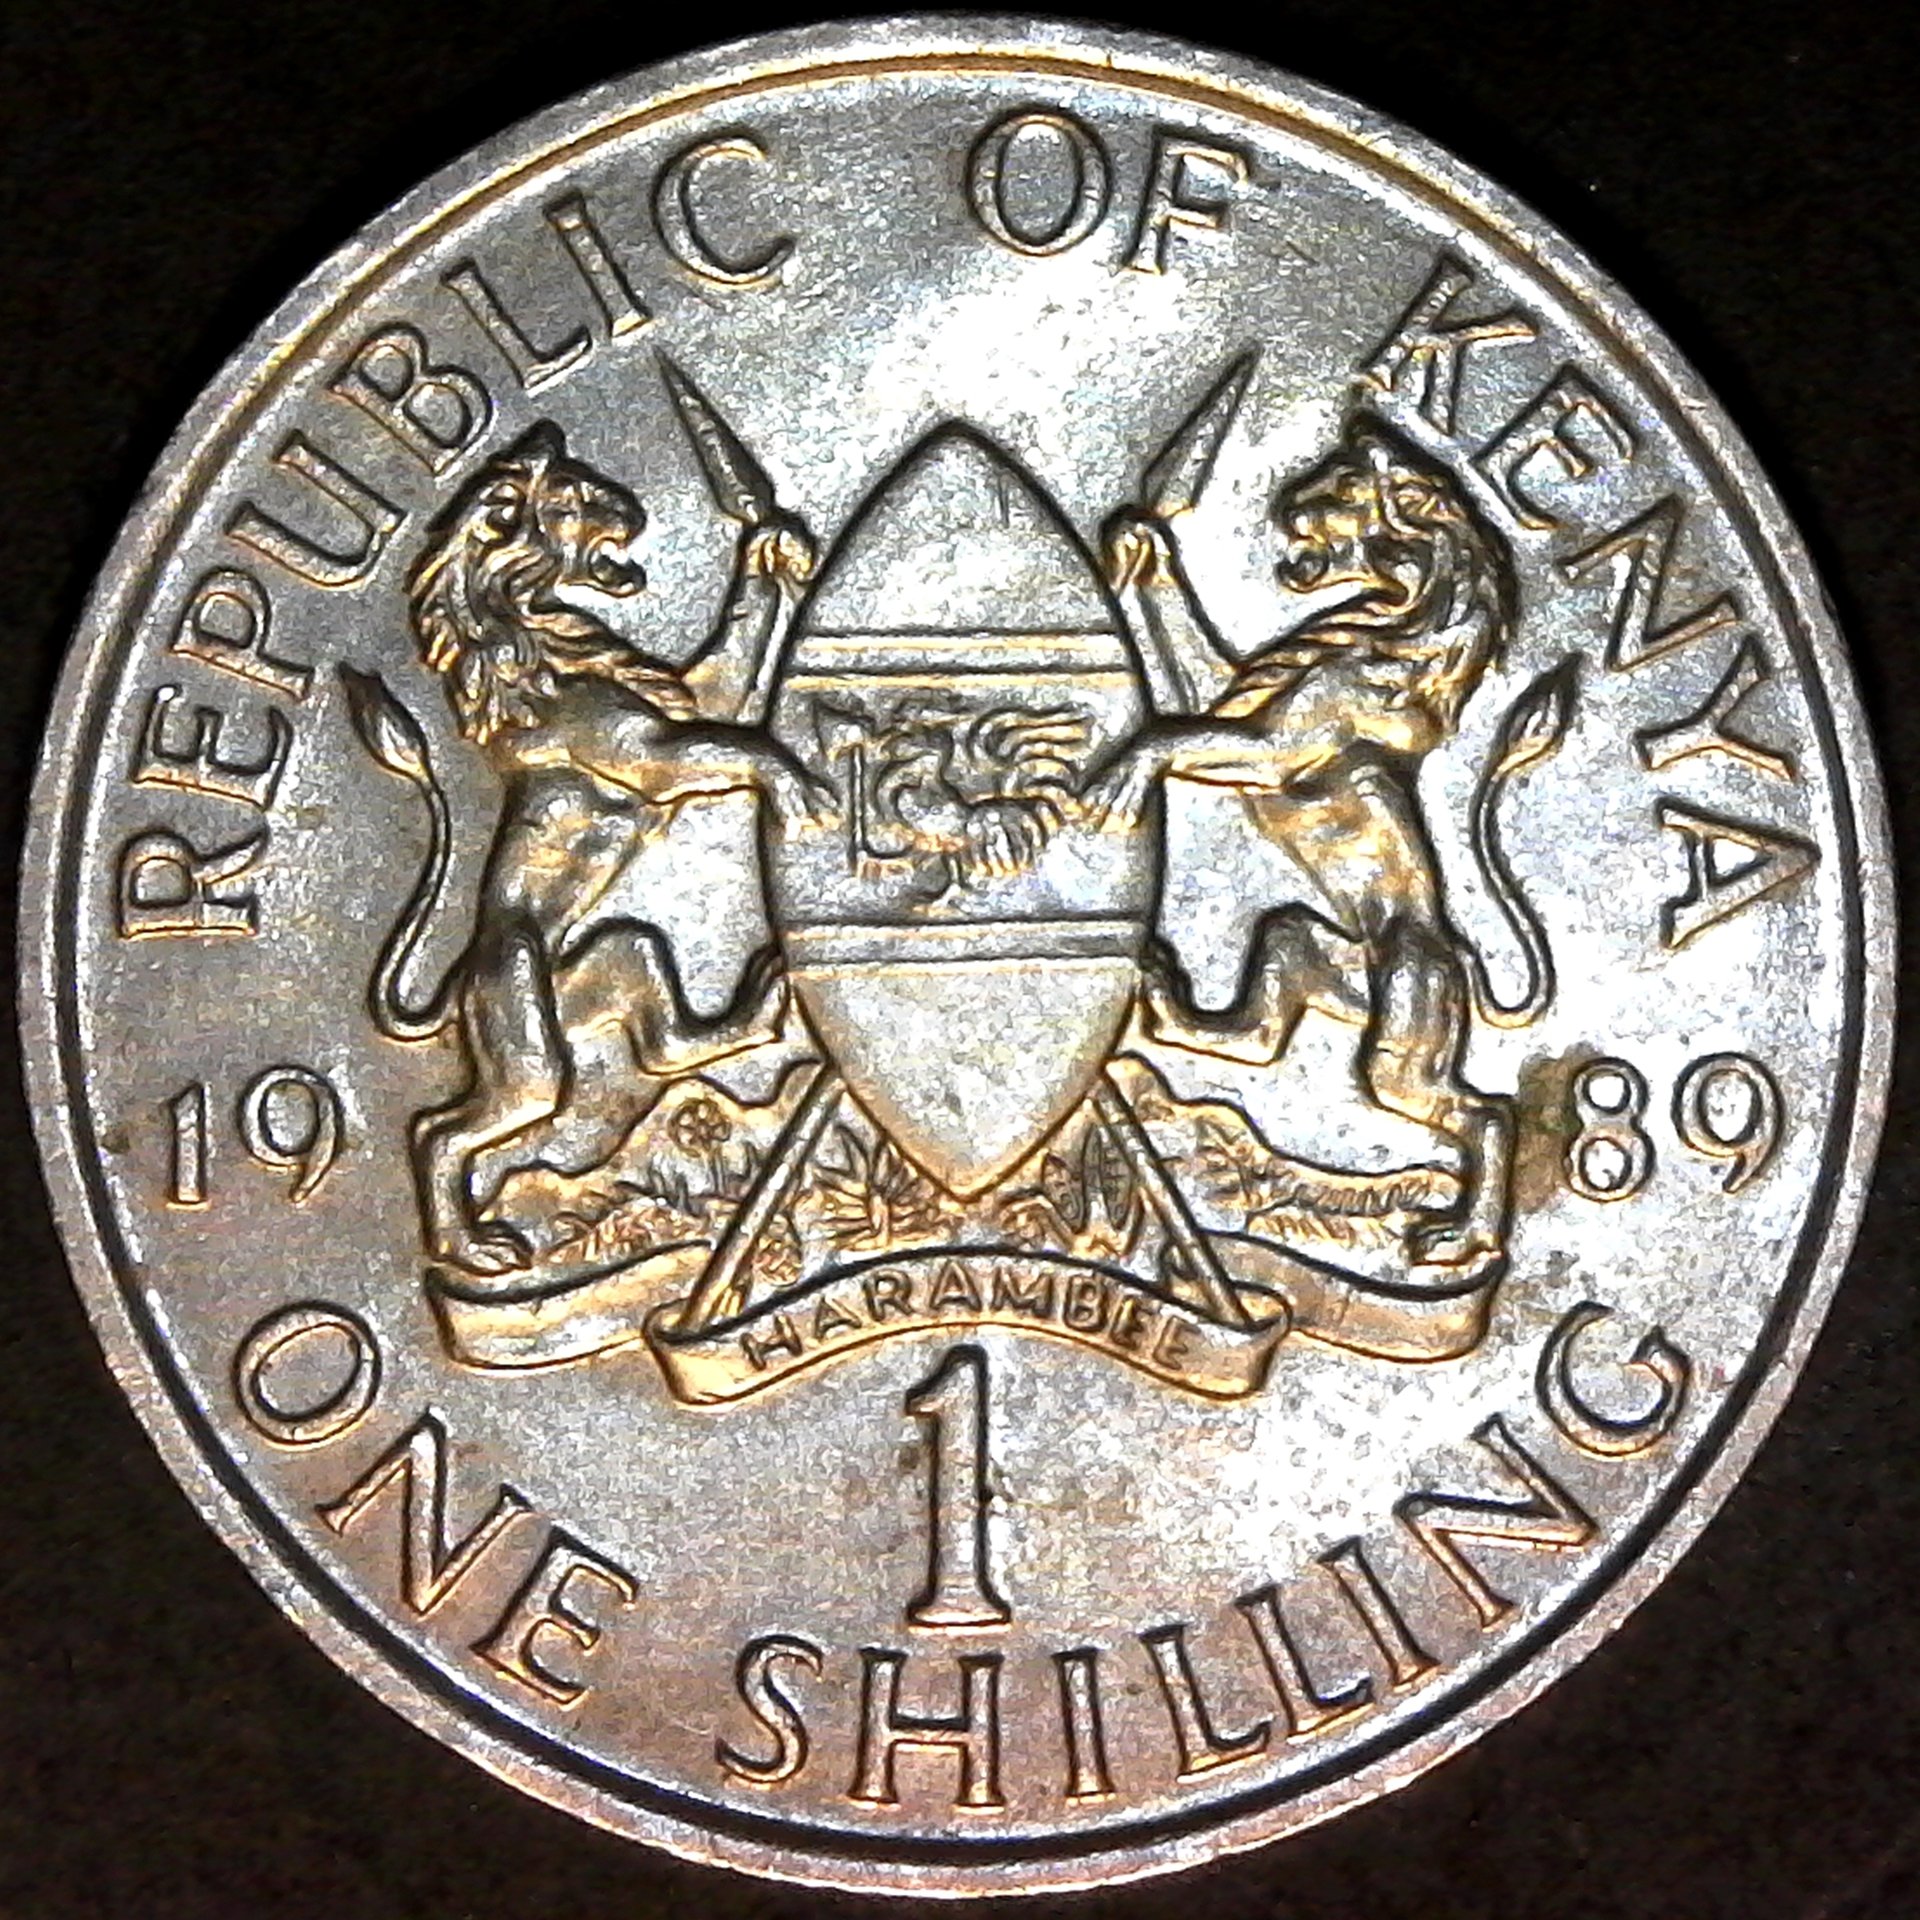 Kenya 1 Shilling 1989 obv.jpg